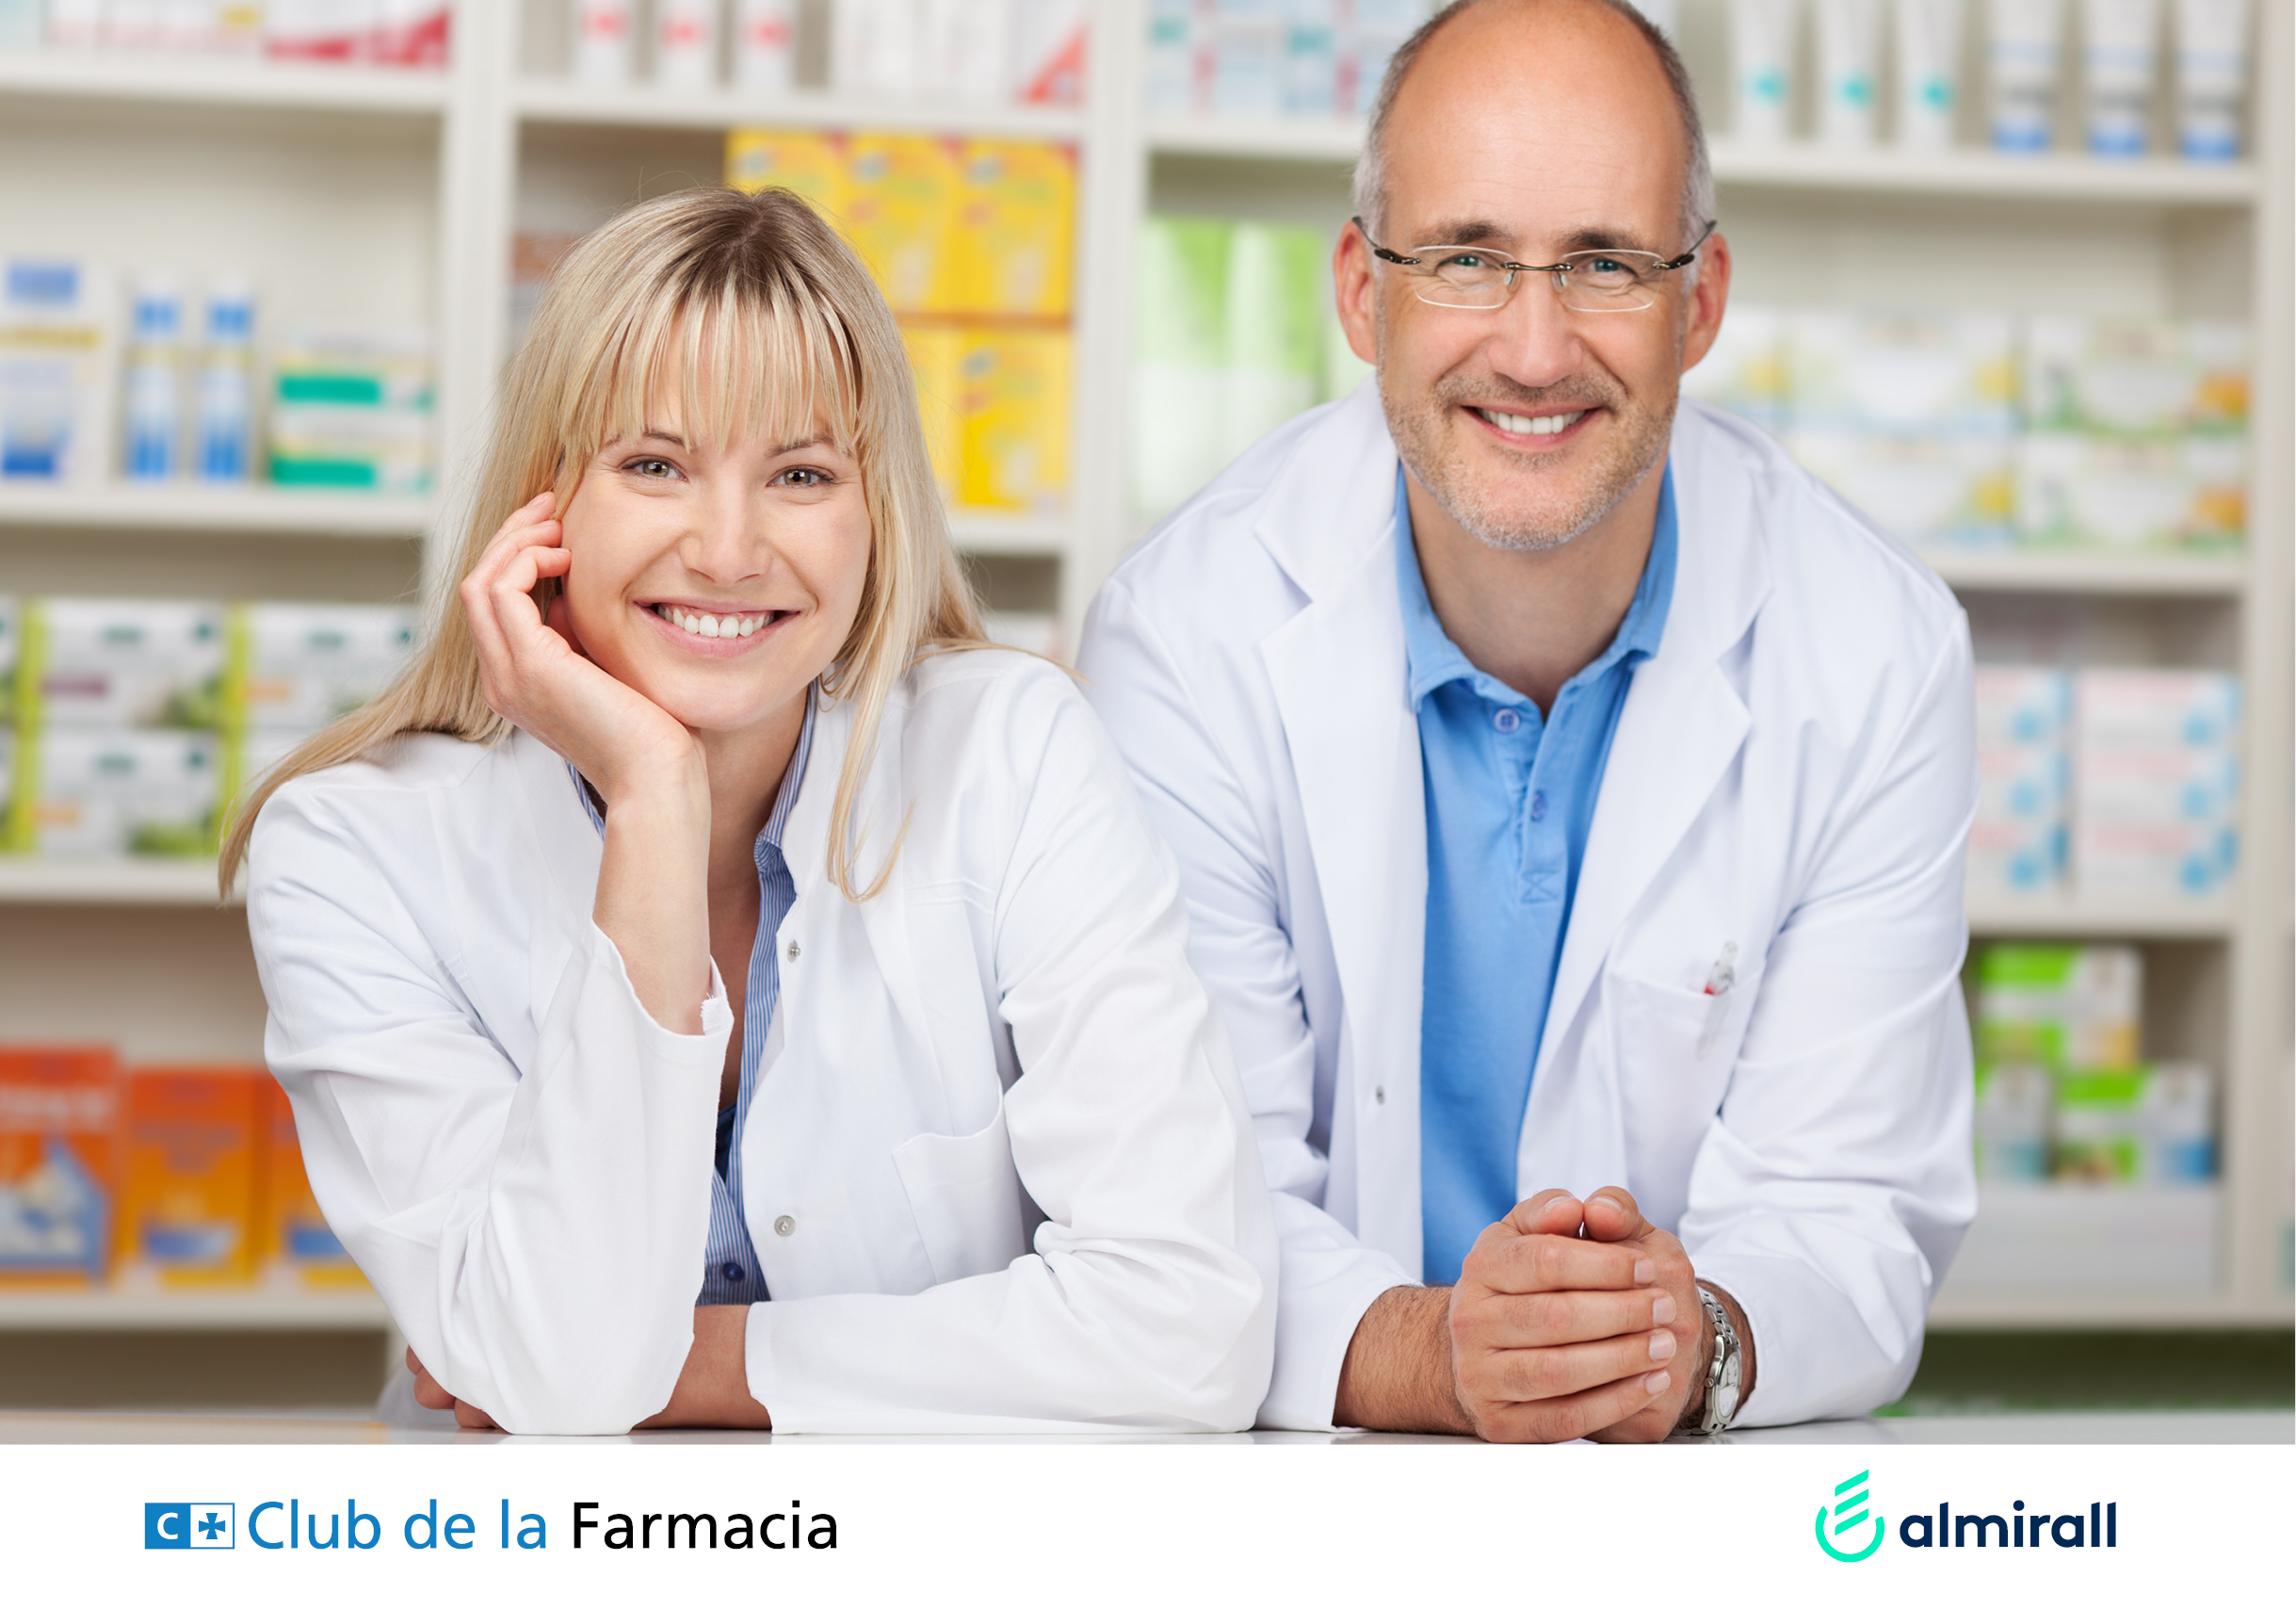 Club de la Farmacia - Blog - Atención farmacéutica|Gestión